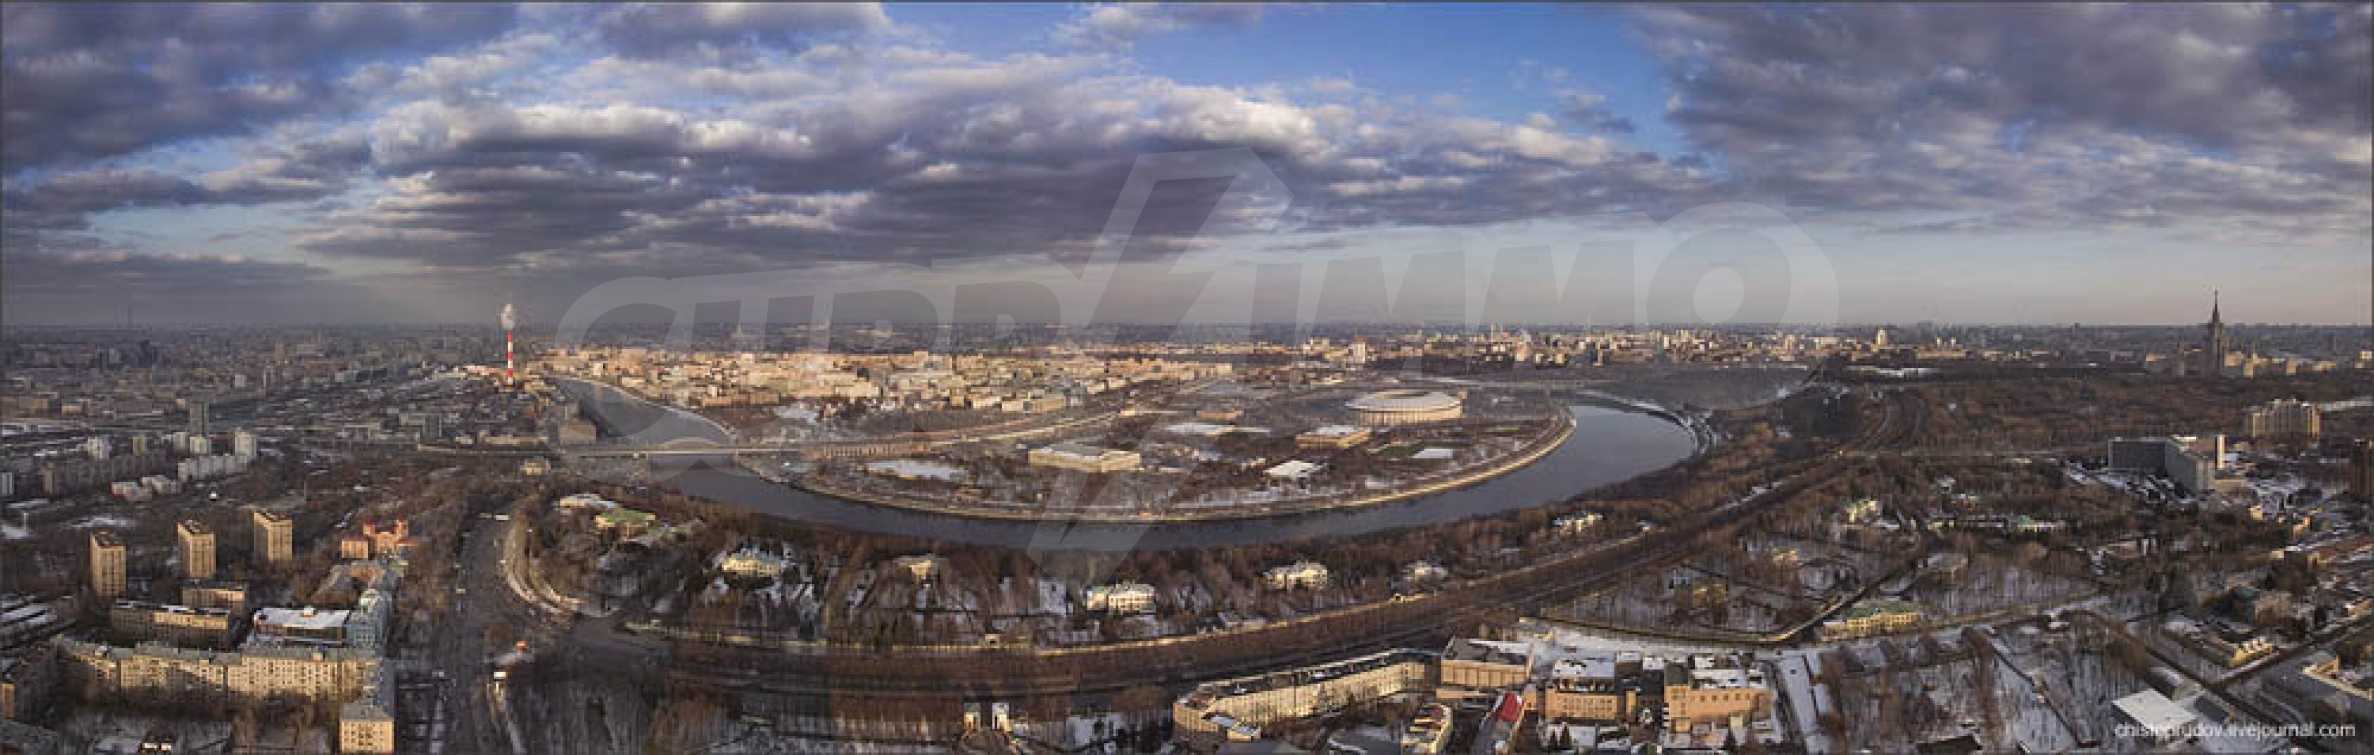 панорама москвы сверху